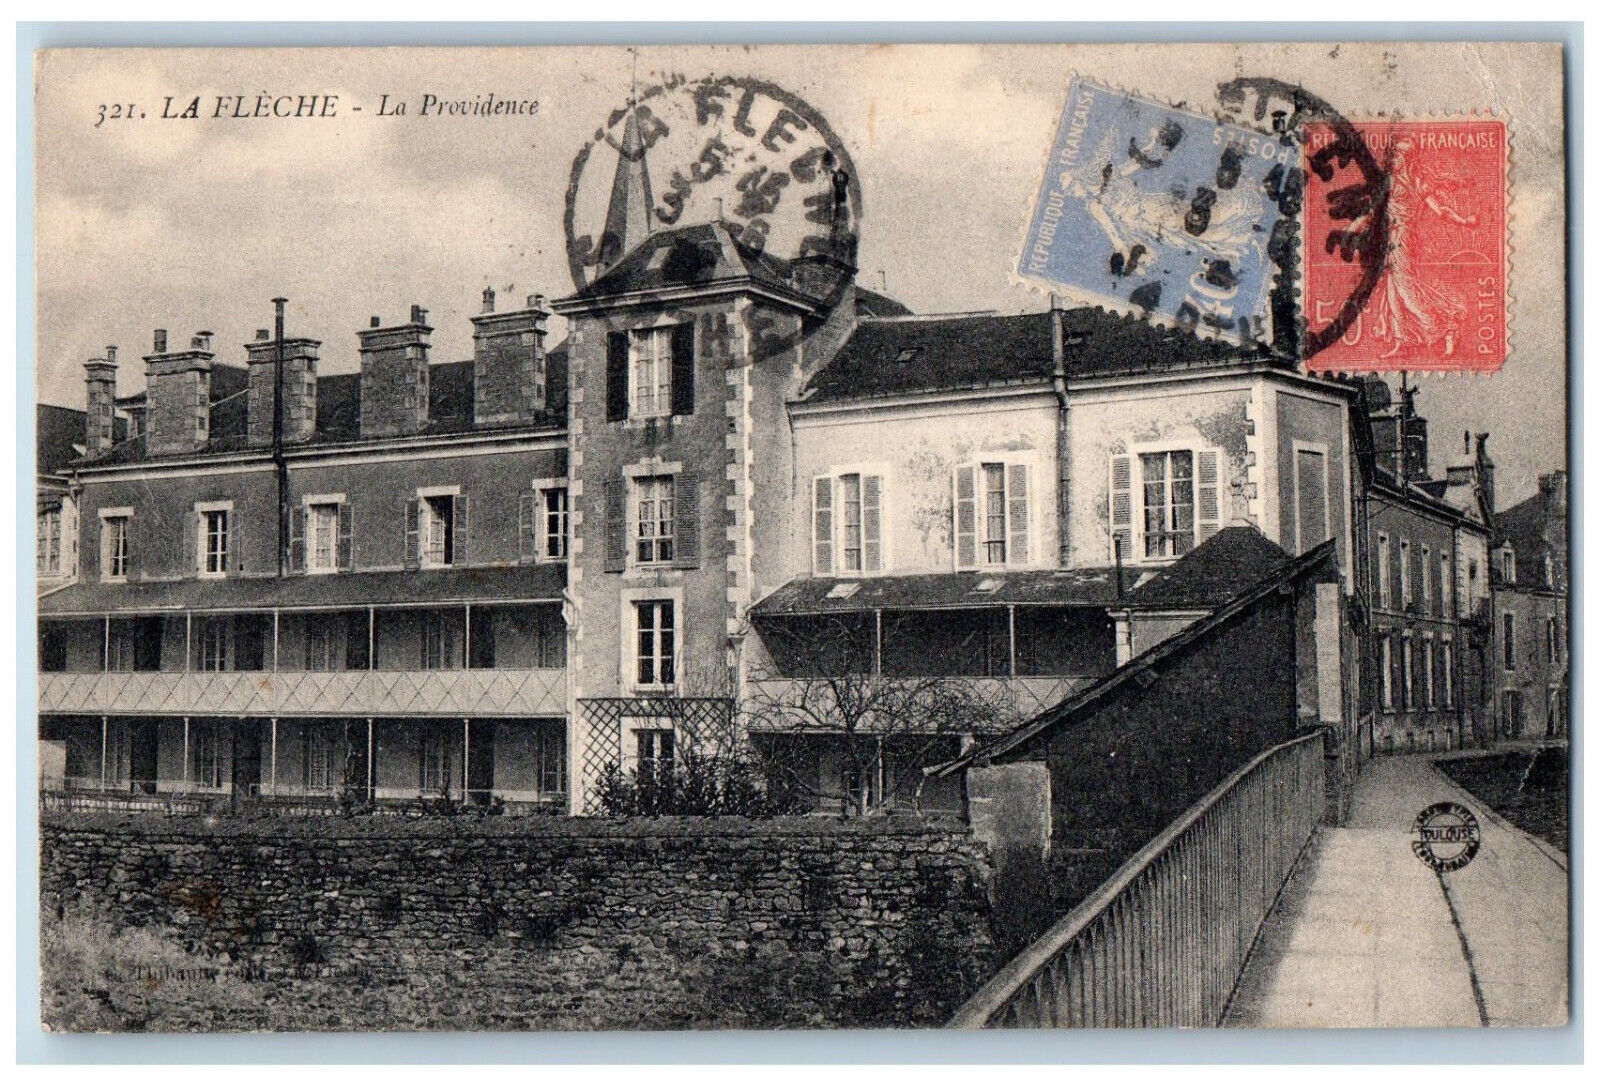 La Flèche Sarthe Pays de la Loire France Postcard The Providence c1930's